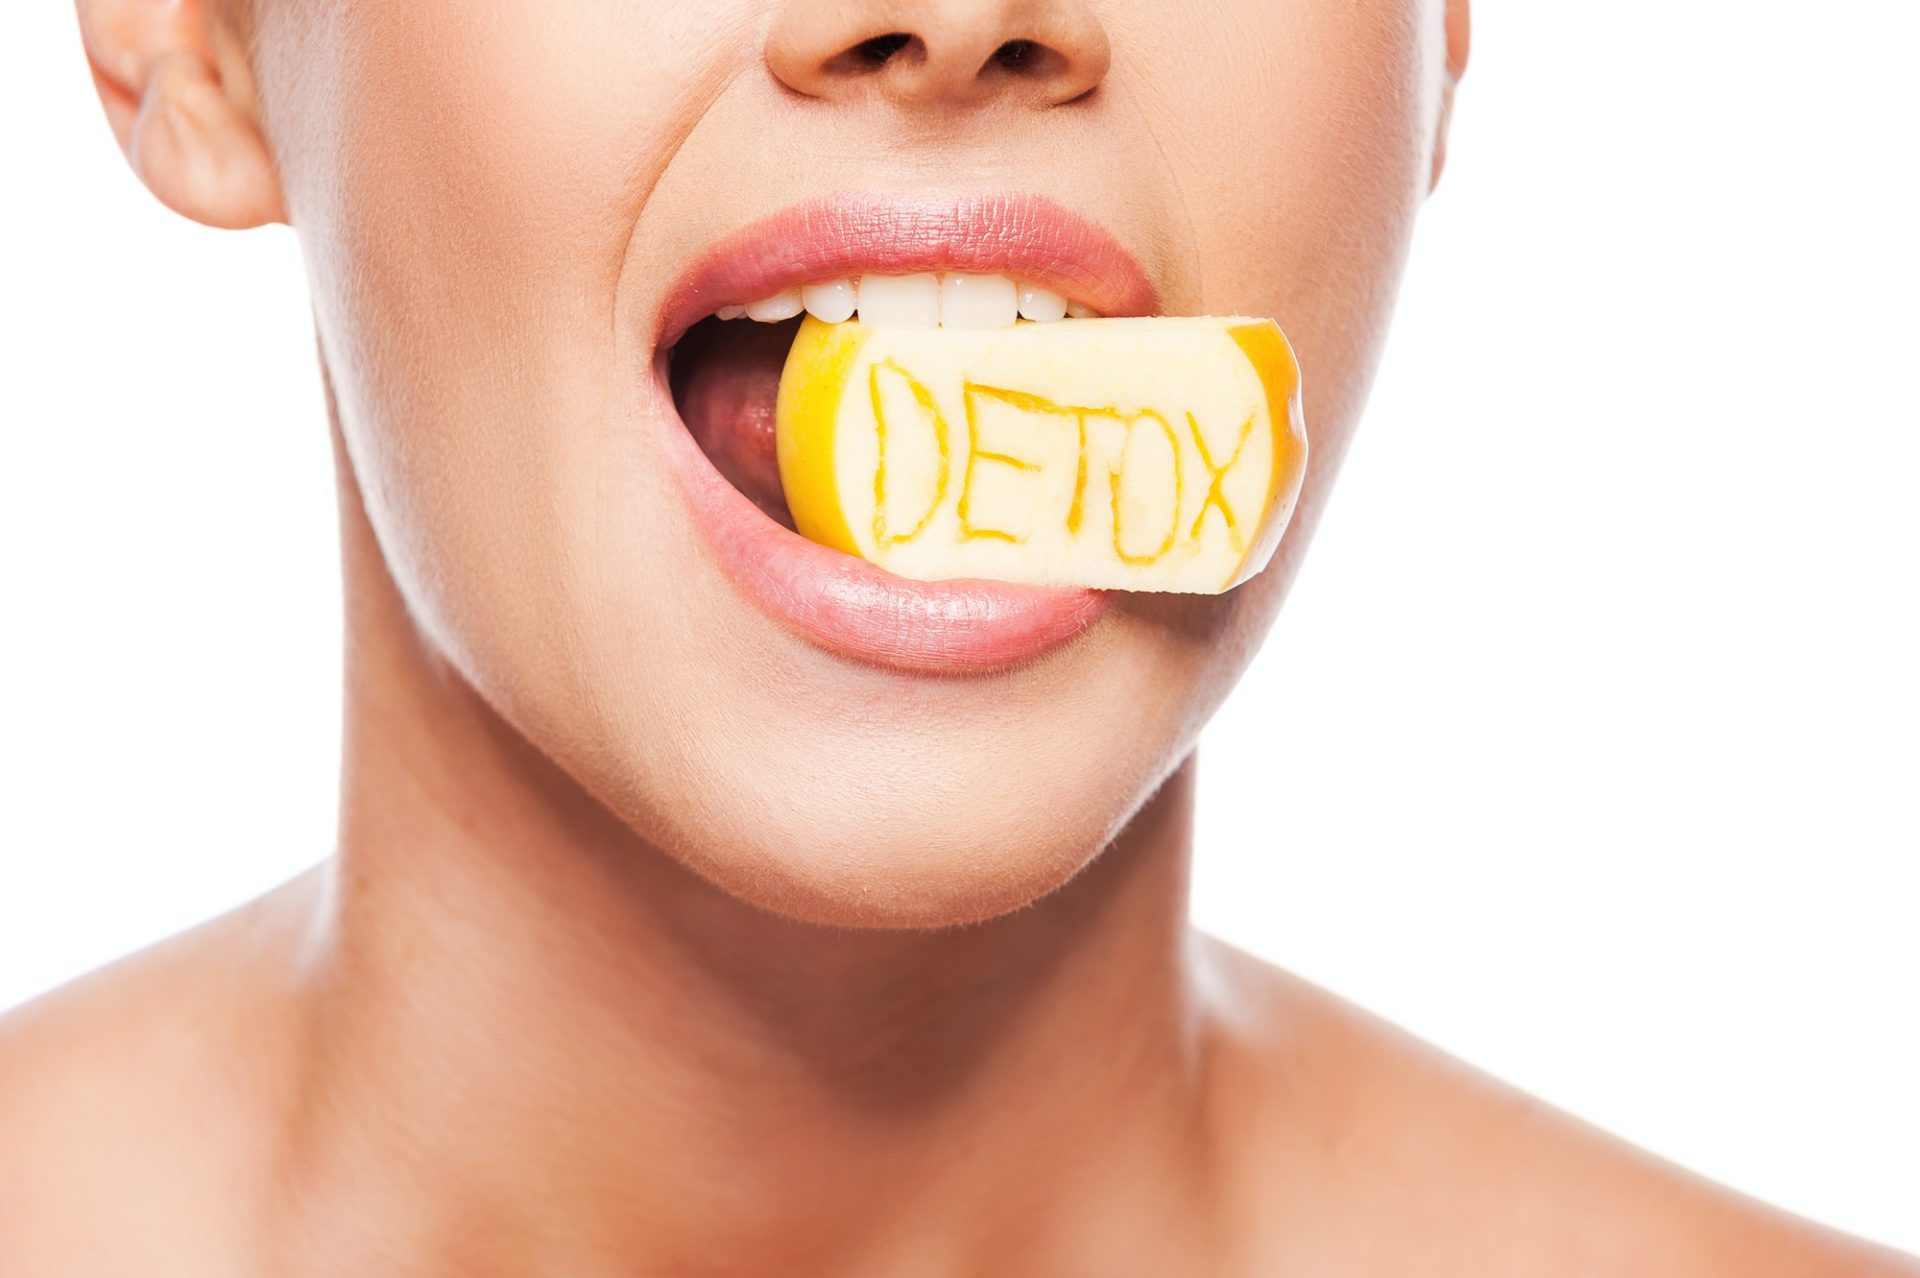 Detox diet.